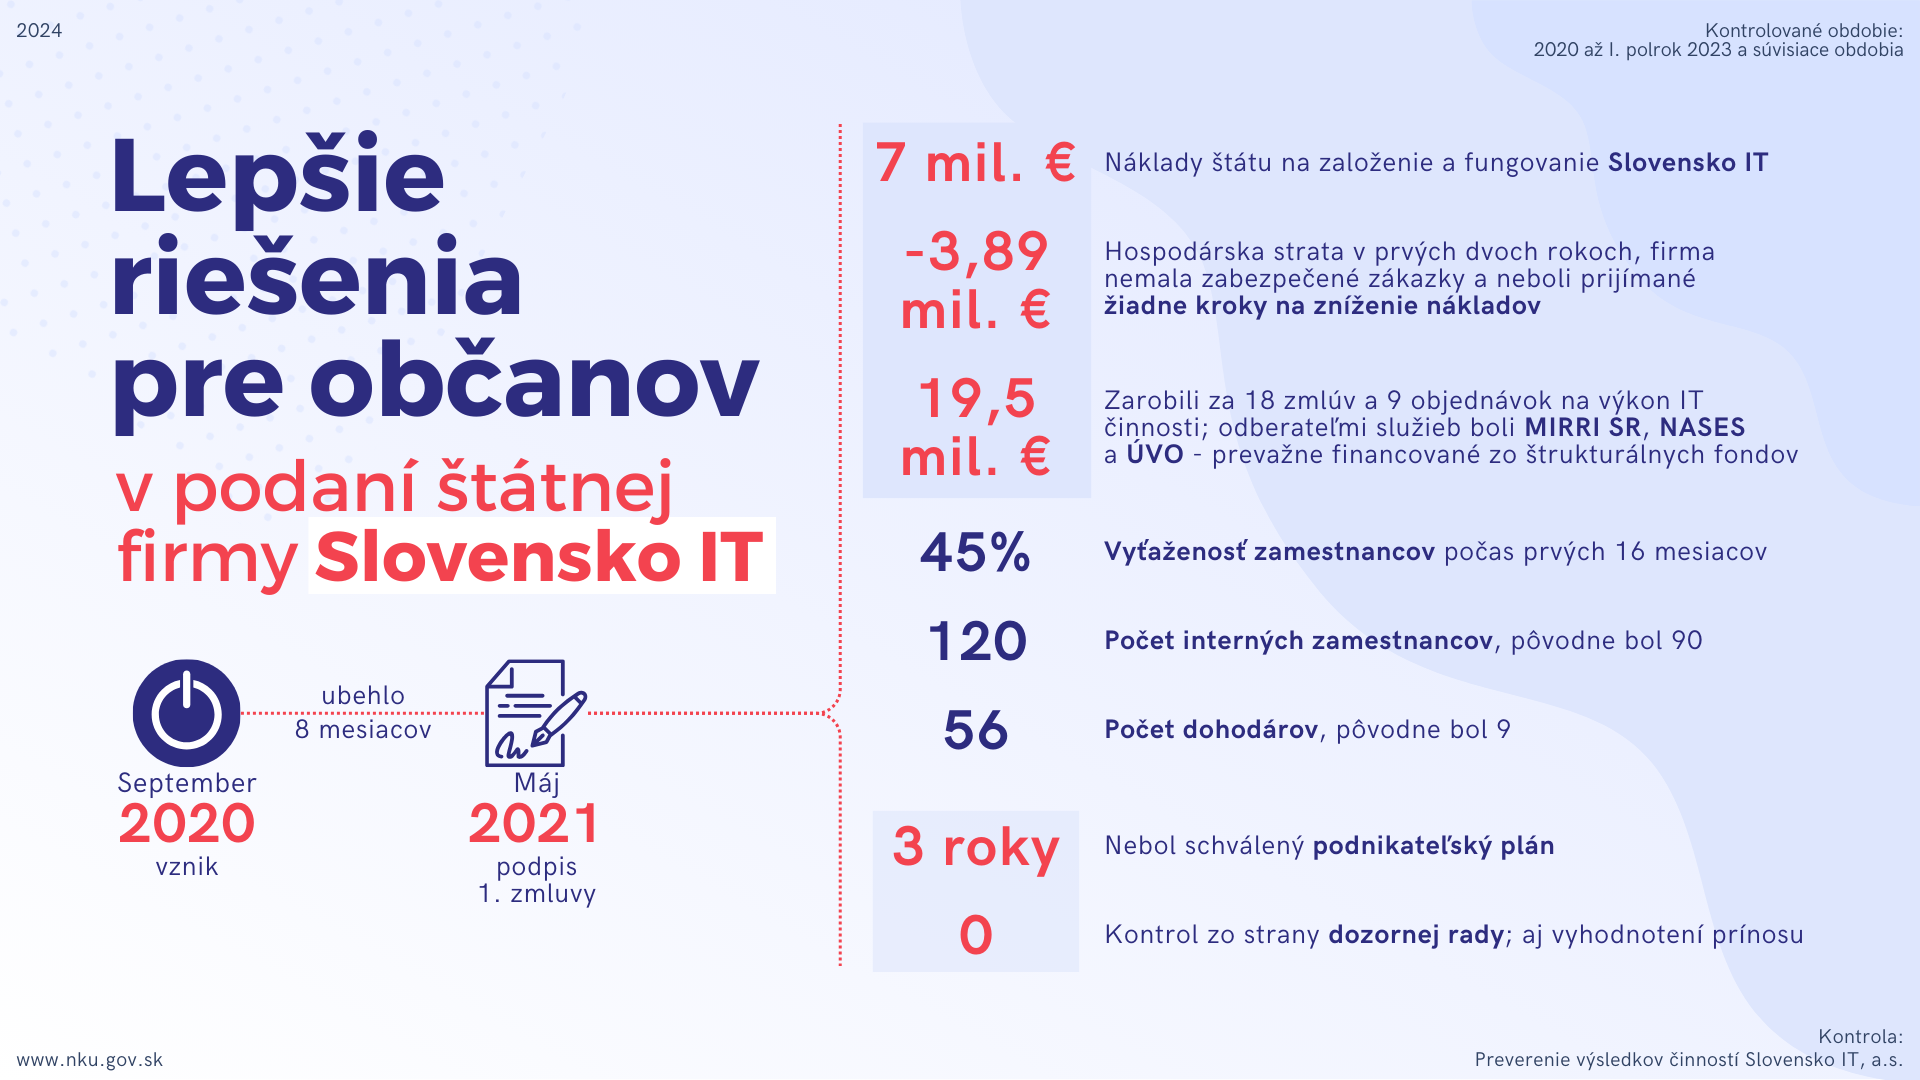 Infografika: Kontrola: Preverenie výsledkov činností Slovensko IT, a.s.   Kontrolované obdobie: 2020 až I. polrok 2023 a súvisiace obdobia   Lepšie riešenia pre občanov v podaní štátnej firmy Slovensko IT;  ubehlo 8 mesiacov; september 2020 vznik, máj 2021 podpis 1. zmluvy;  7 mil. € Náklady štátu na založenie a fungovanie Slovensko IT;  -3,89 mil. € Hospodárska strata v prvých dvoch rokoch, firma nemala zabezpečené zákazky a neboli prijímané  žiadne kroky na zníženie nákladov;  19,5 mil. € Zarobili za 18 zmlúv a 9 objednávok na výkon IT činnosti; odberateľmi služieb boli MIRRI SR, NASES  a ÚVO - prevažne financované zo štrukturálnych fondov; 45% Vyťaženosť zamestnancov počas prvých 16 mesiacov;   120 Počet interných zamestnancov, pôvodne bol 90;  56 Počet dohodárov, pôvodne bol 9;  3 roky Nebol schválený podnikateľský plán;  0 Kontrol zo strany dozornej rady; aj vyhodnotení prínosu;